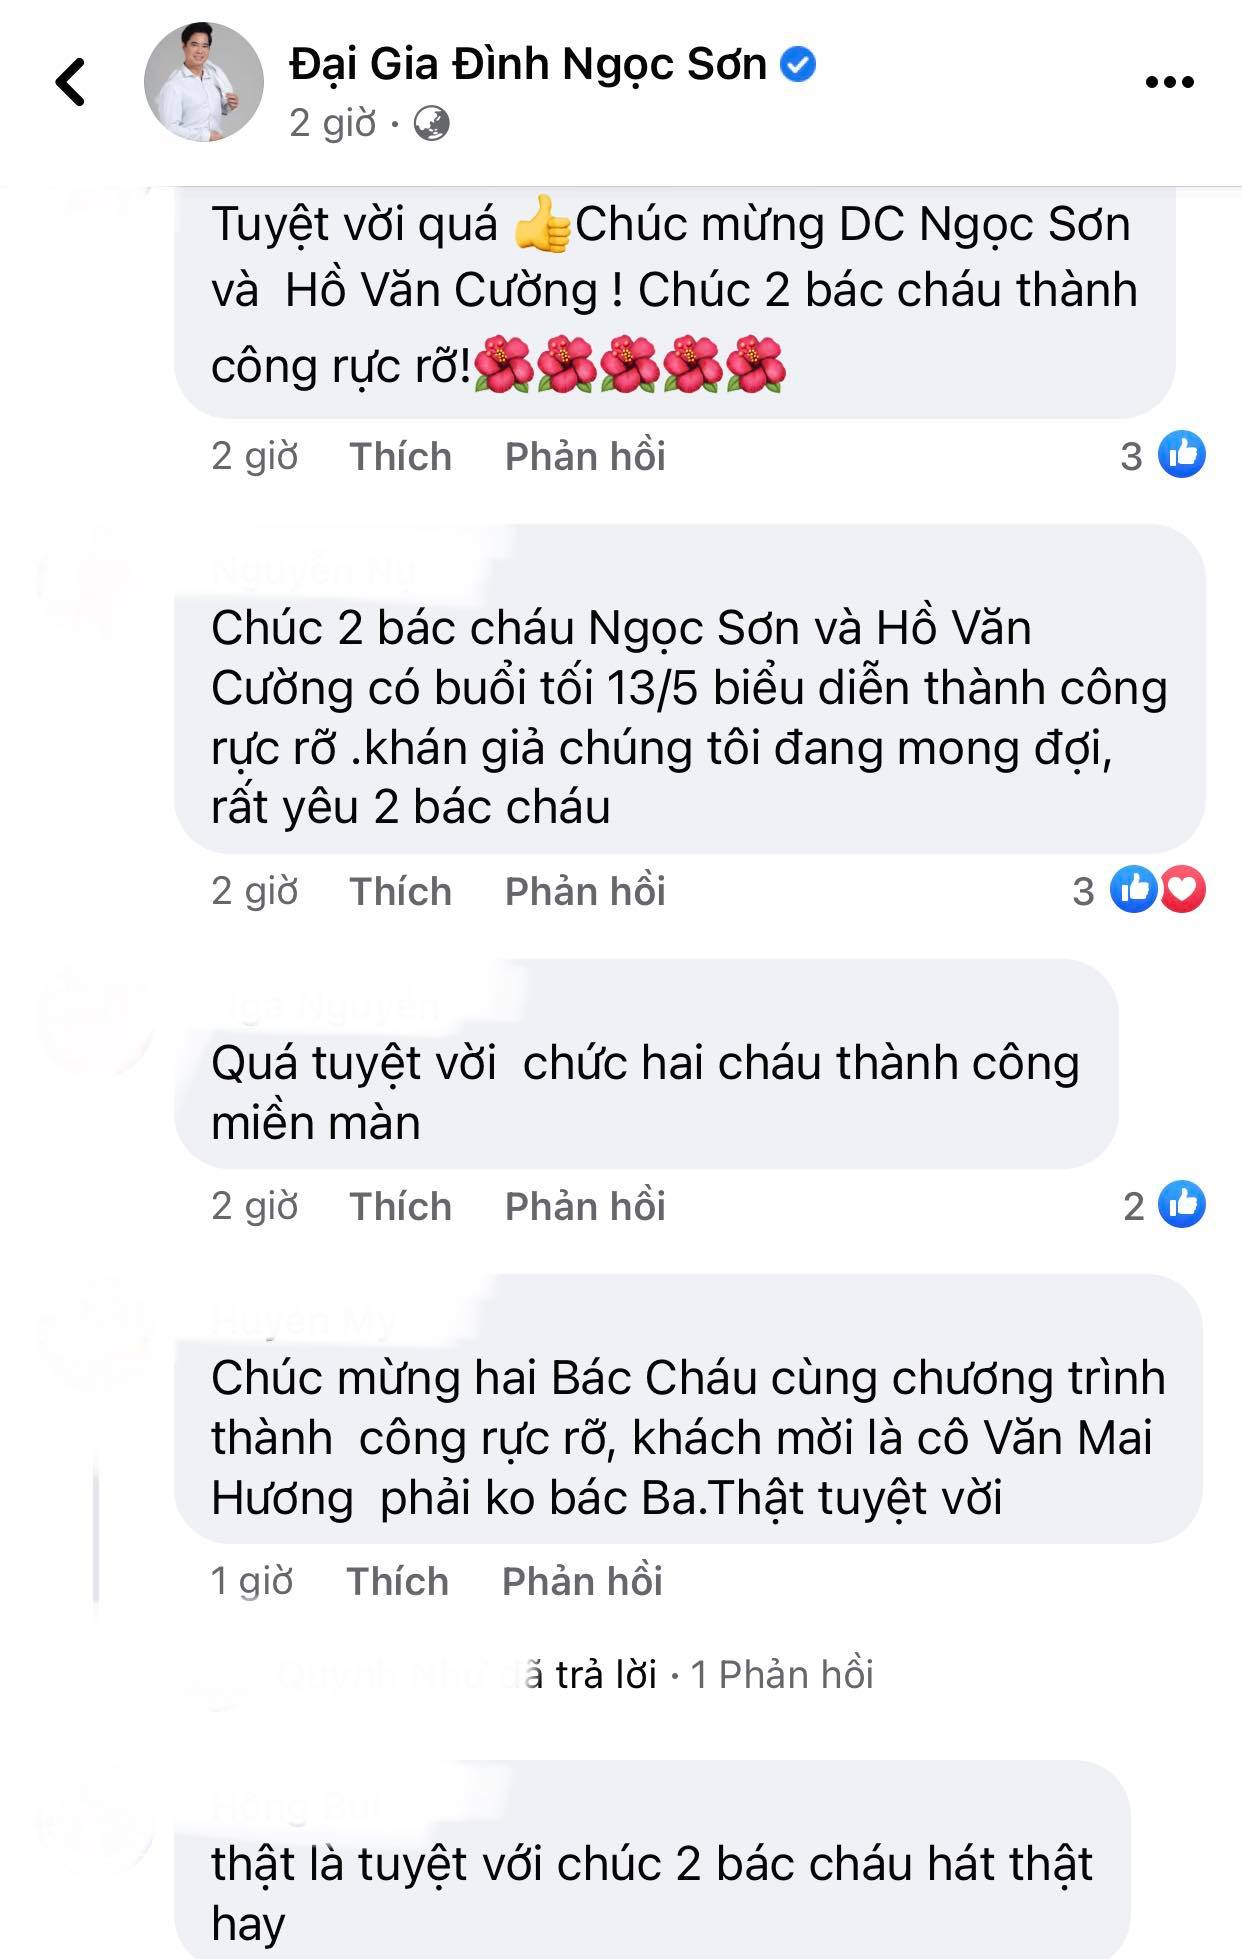 Ngoc-son-dang-dan-bao-tin-vui-hao-huc-noi-ve-ho-van-cuong-khan-gia-dong-loat-gui-loi-chuc-mung